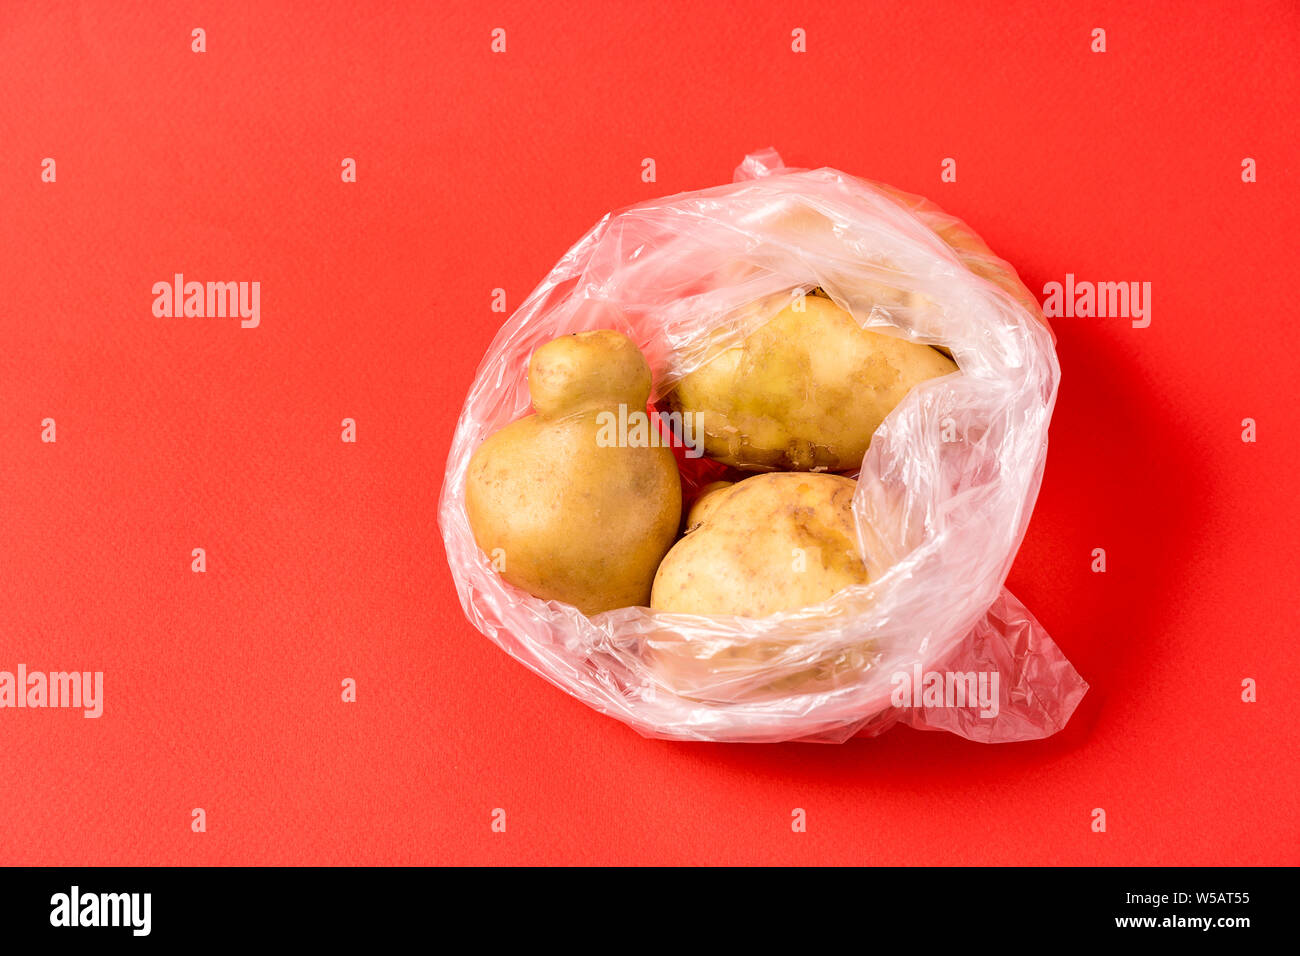 Vorderansicht Kartoffeln in Plastikbeutel auf rotem Hintergrund. Bild zeigt die harmness der Verwendung künstlicher Lebensmittel Taschen. Stockfoto